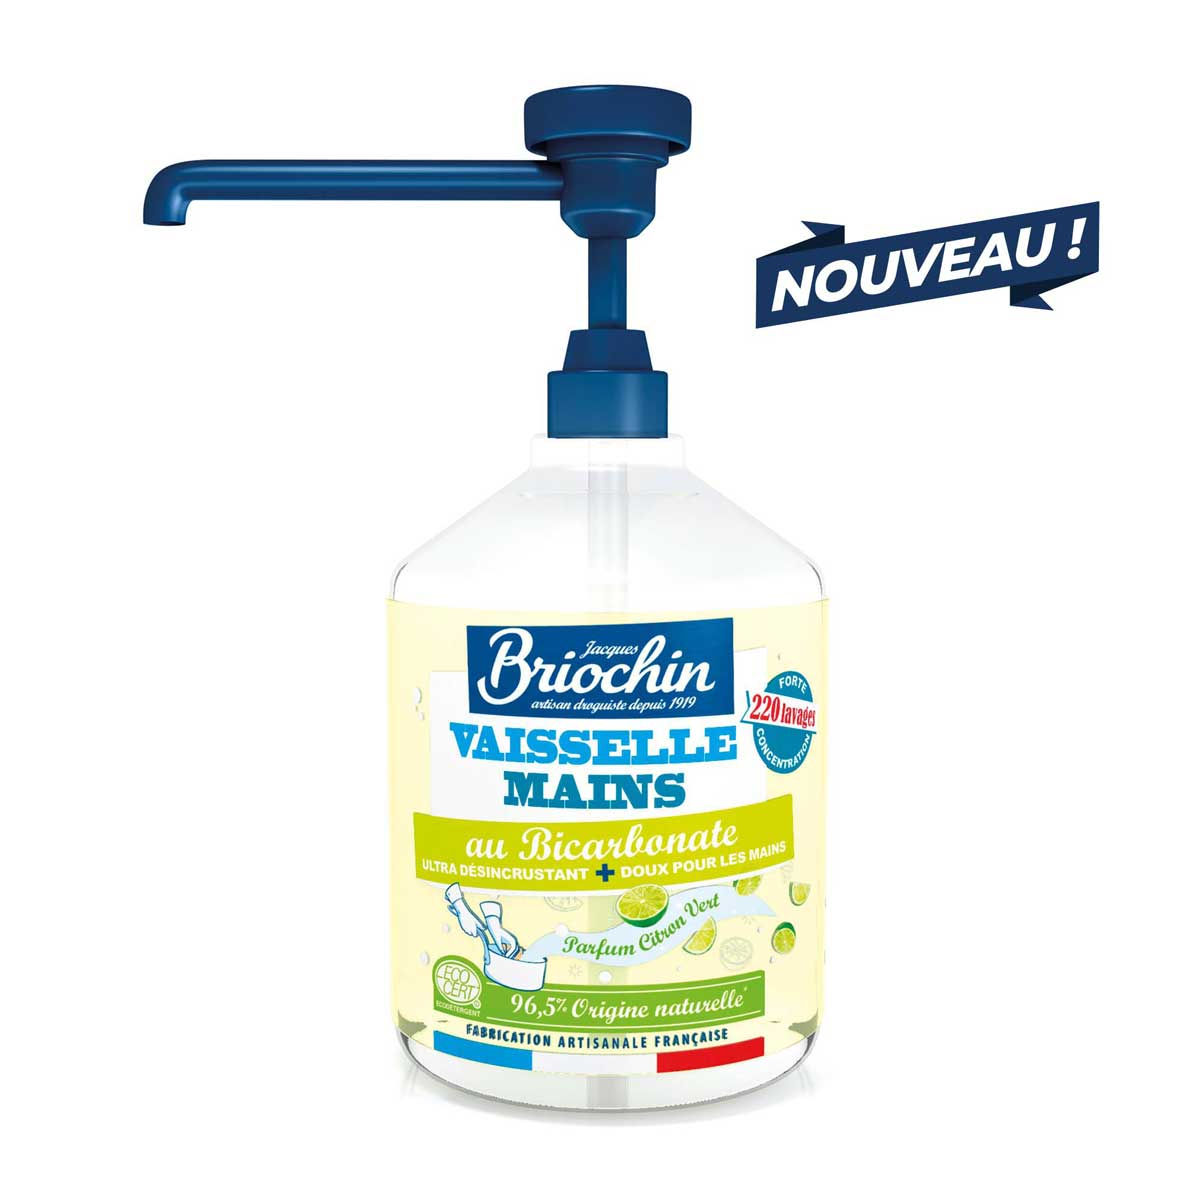 https://www.mamawax.fr/4005/liquide-vaisselle-et-mains-2-en-1-au-bicarbonate-de-soude-et-glycerine.jpg